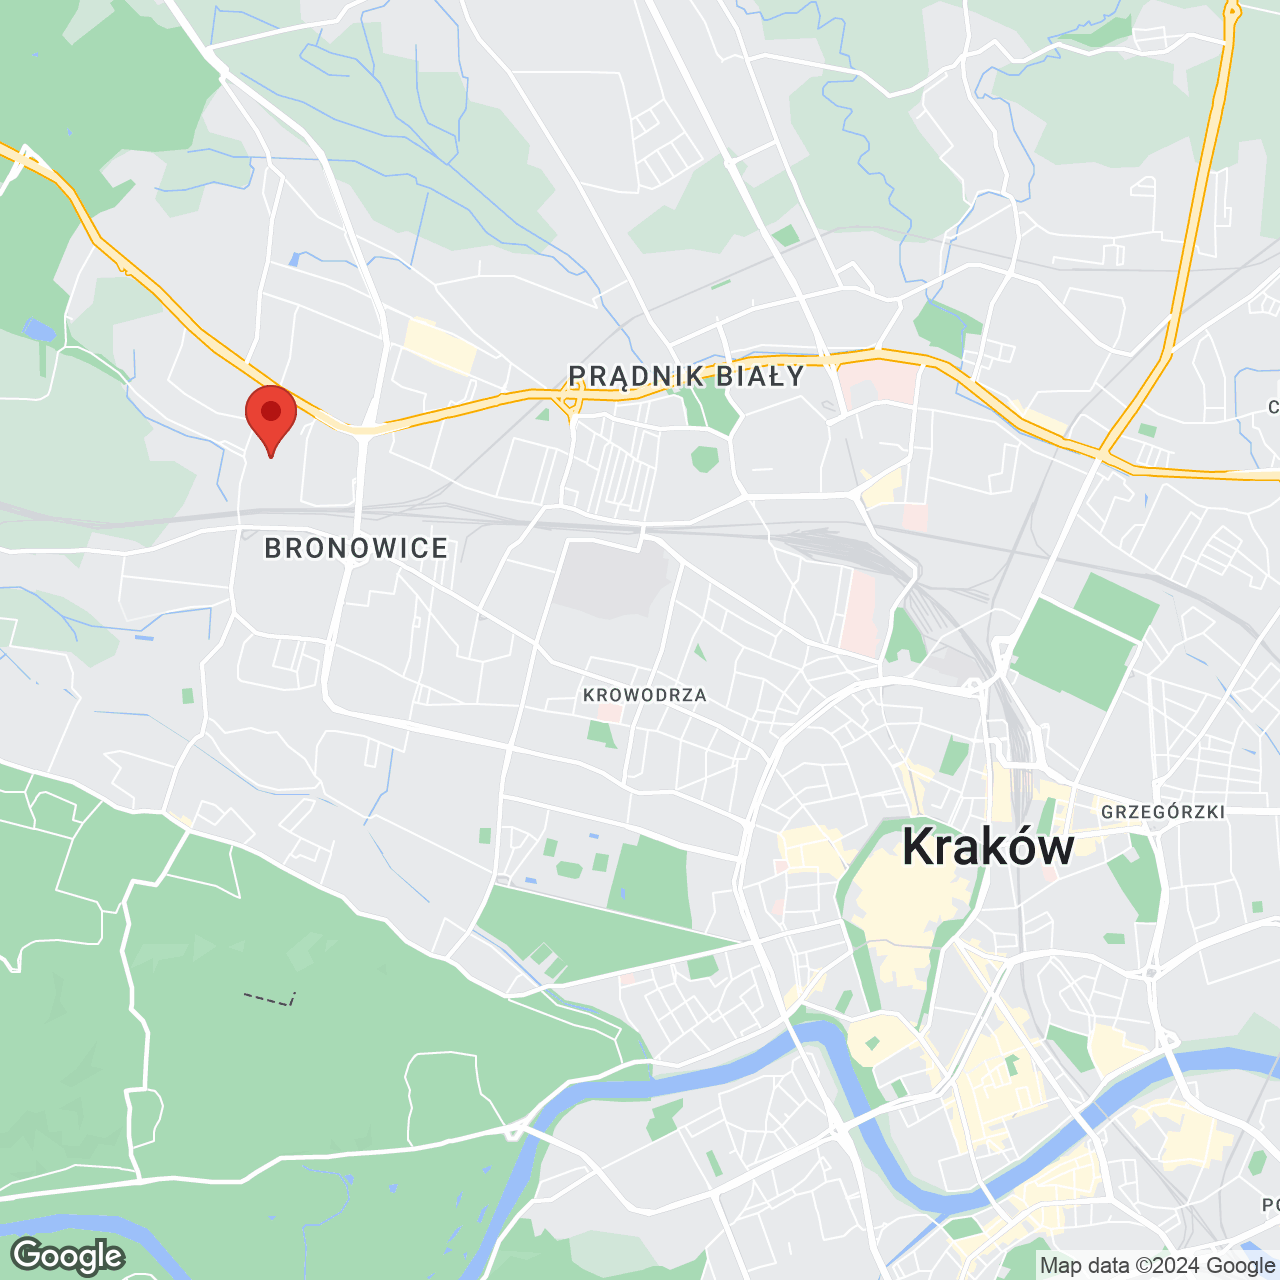 Mapa lokaliacji Mieszkaj w Mieście – etap Pianistów (bud. I)